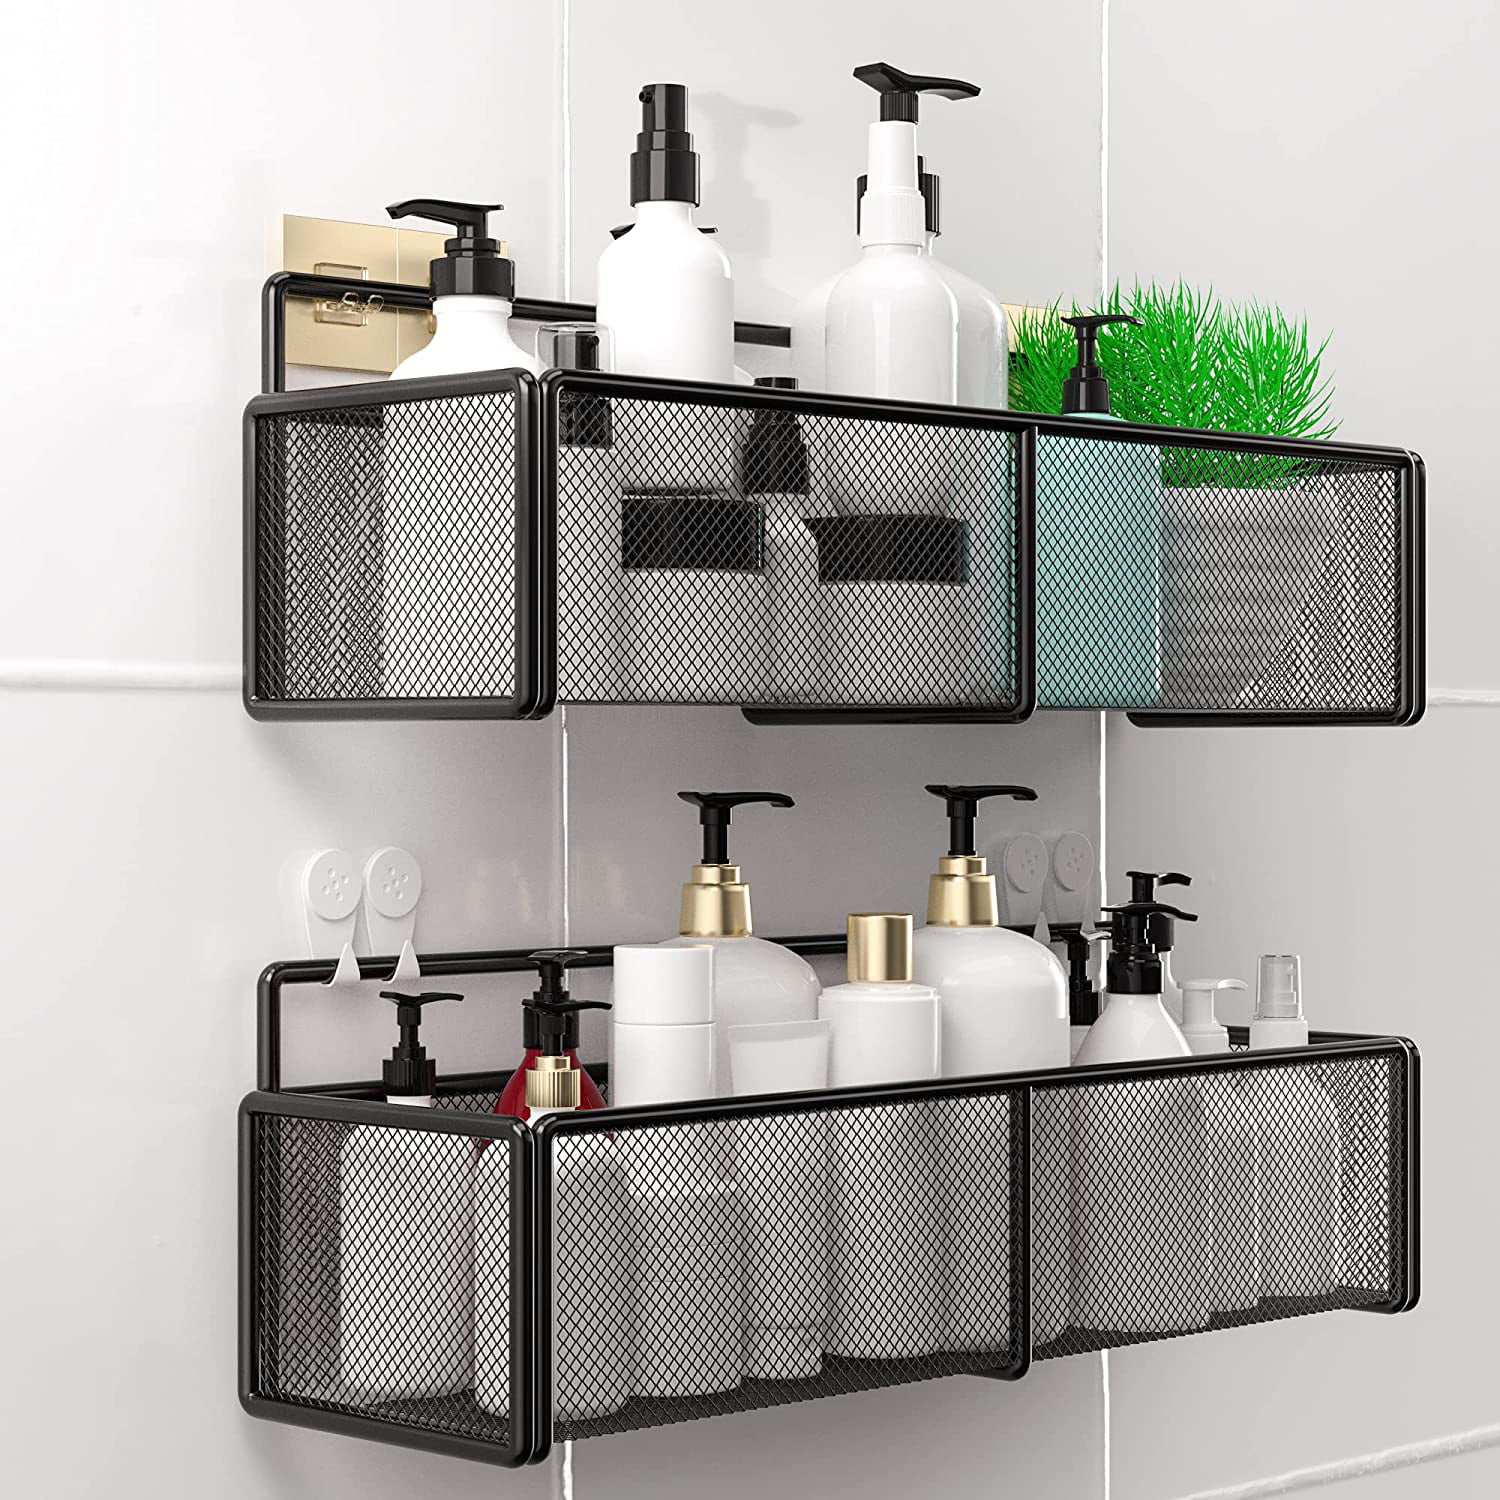 Bathroom Tub Shower Caddy Easy Adhesive Wall Mounted Shelf Storage Organizer 